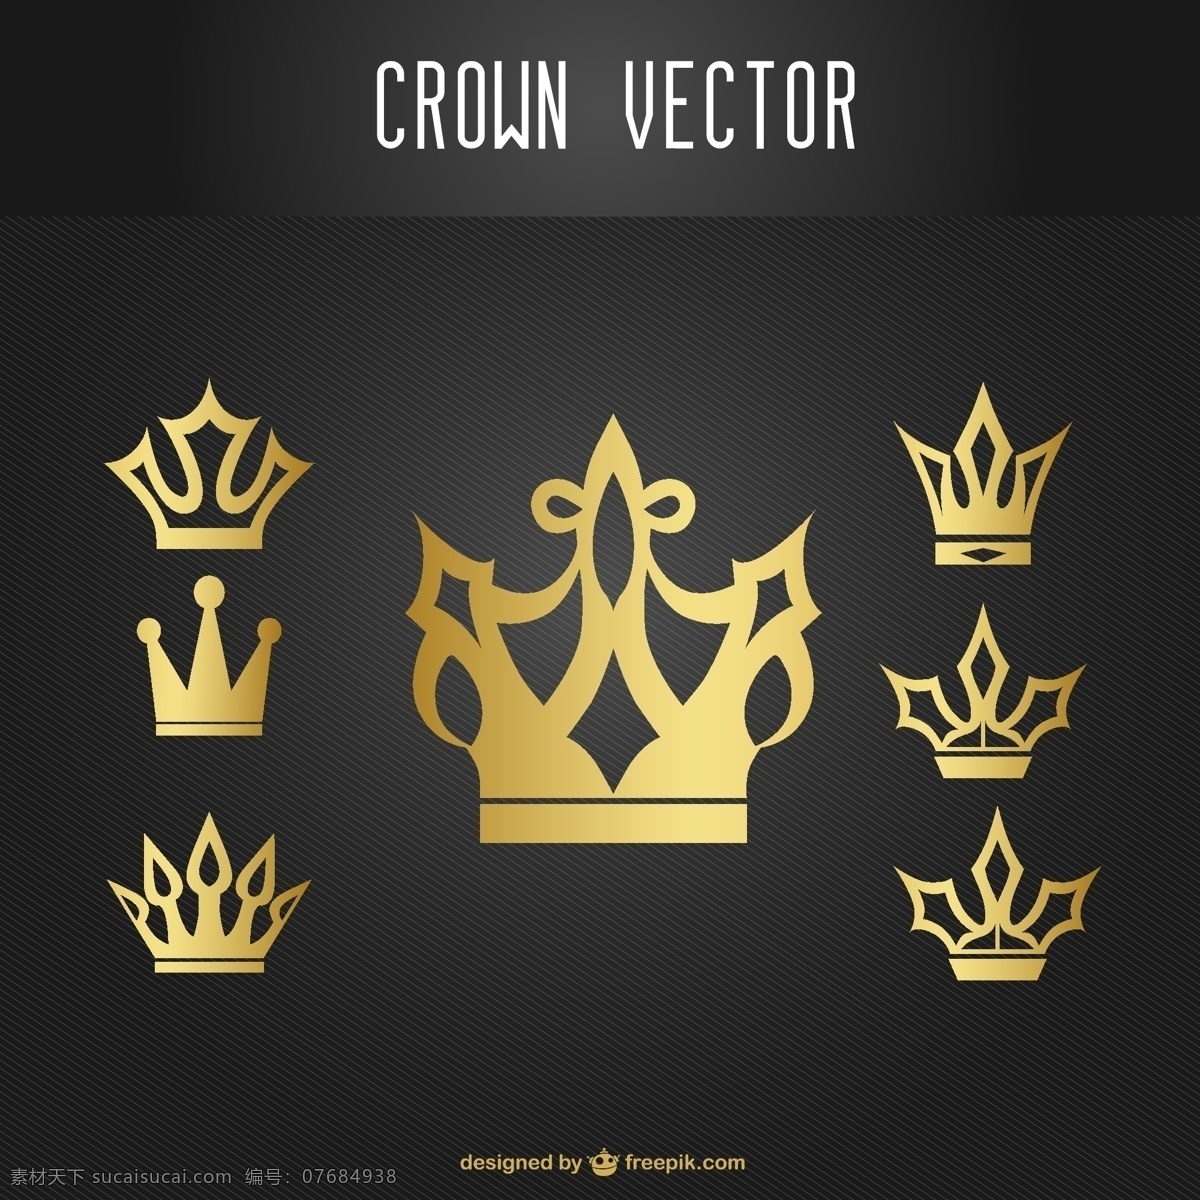 皇冠 冠 衣冠 矢量皇冠 国王 权利 国王头冠 头冠 图标 小图标 标识标志图标 矢量